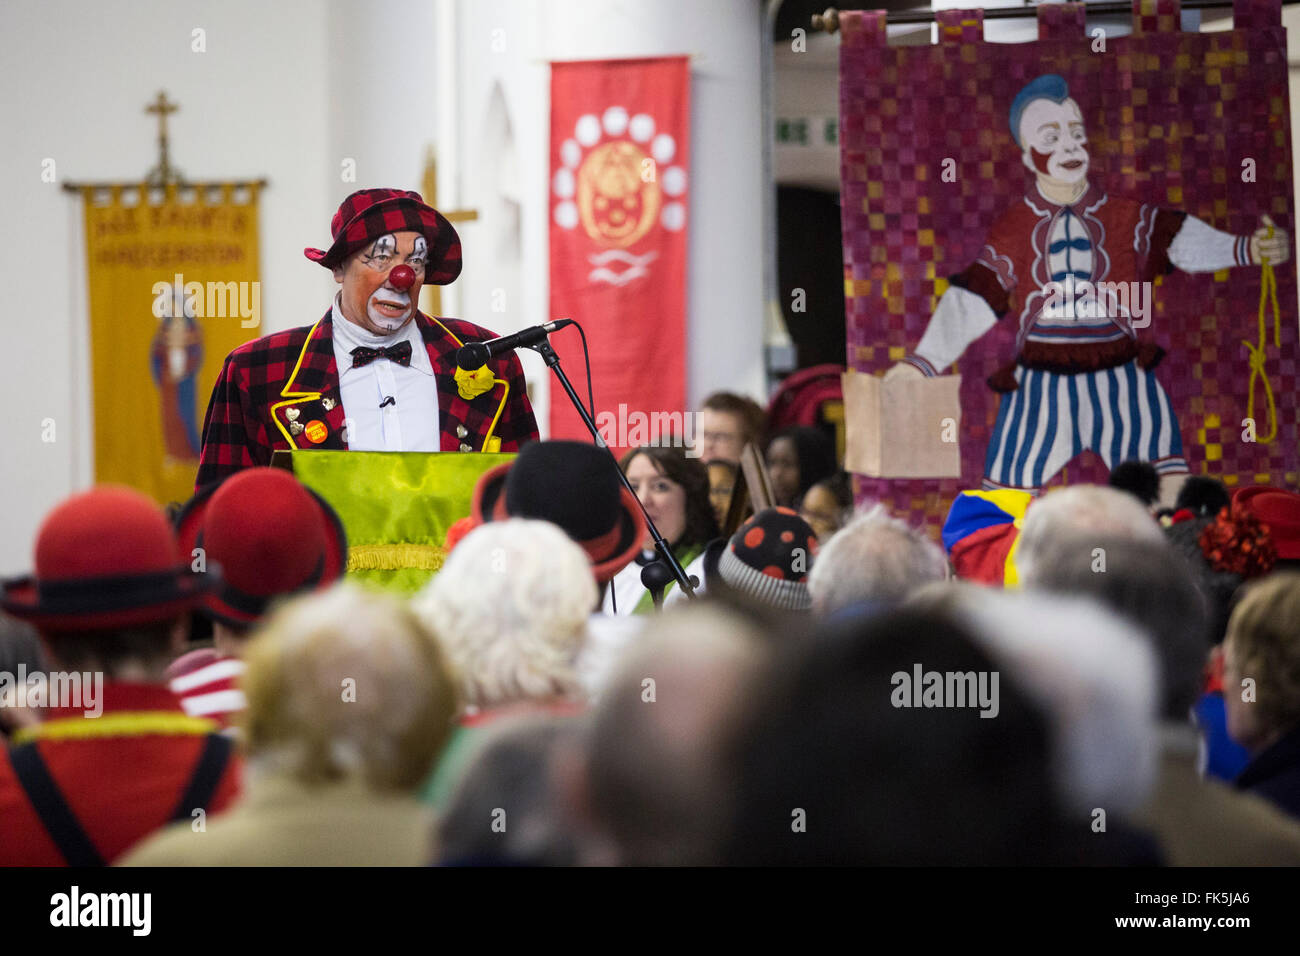 Acteur Simon Callow. Le 70e congrès annuel de service au clown All Saints Church à Londres le 07 février 2016. Clowns se sont réunis à l'église pour se souvenir de Joseph Grimaldi, le célèbre clown anglais qui a vécu entre 1778-1837. Banque D'Images